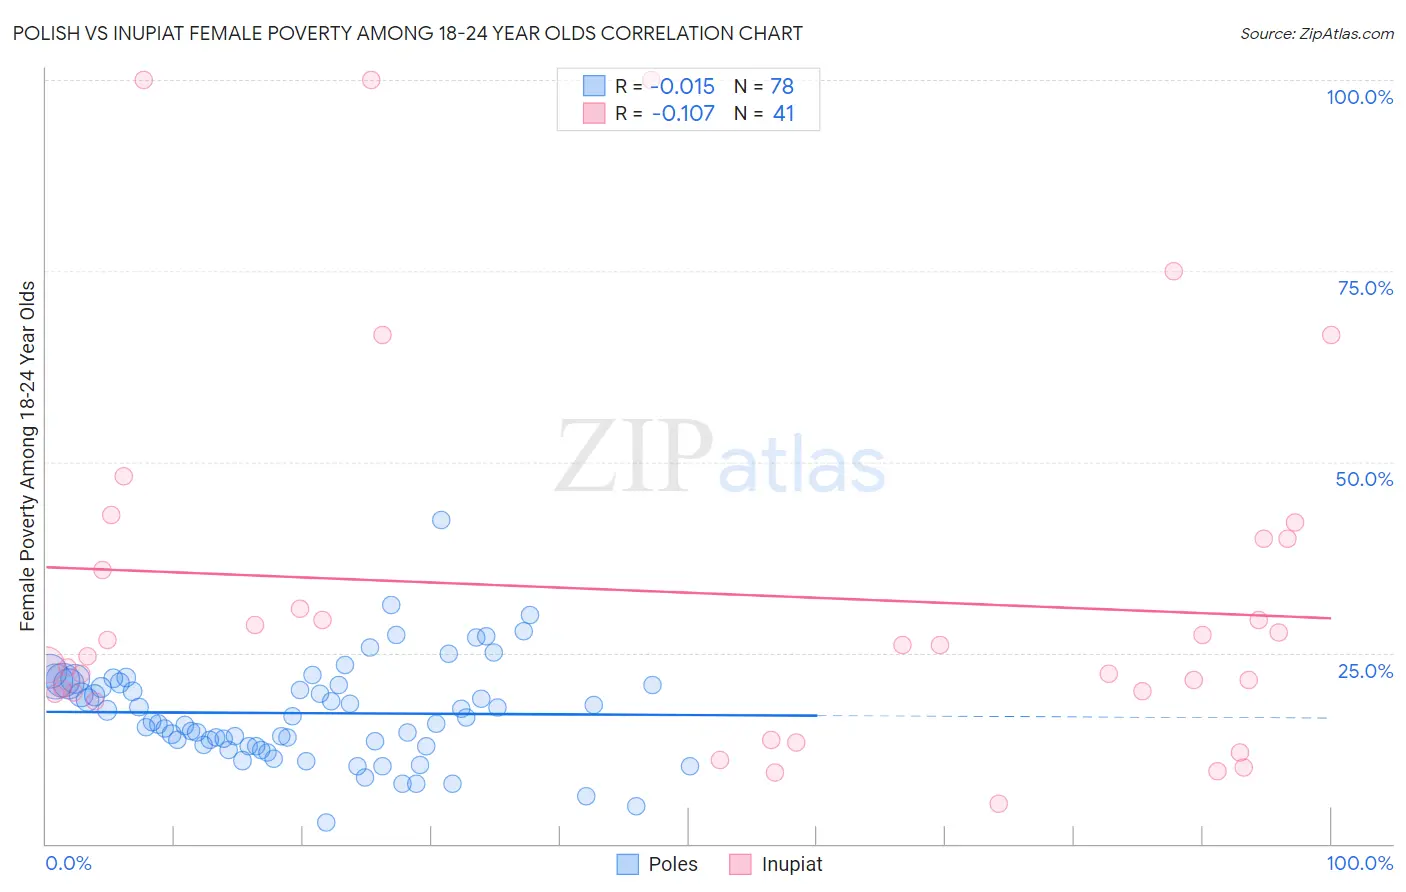 Polish vs Inupiat Female Poverty Among 18-24 Year Olds